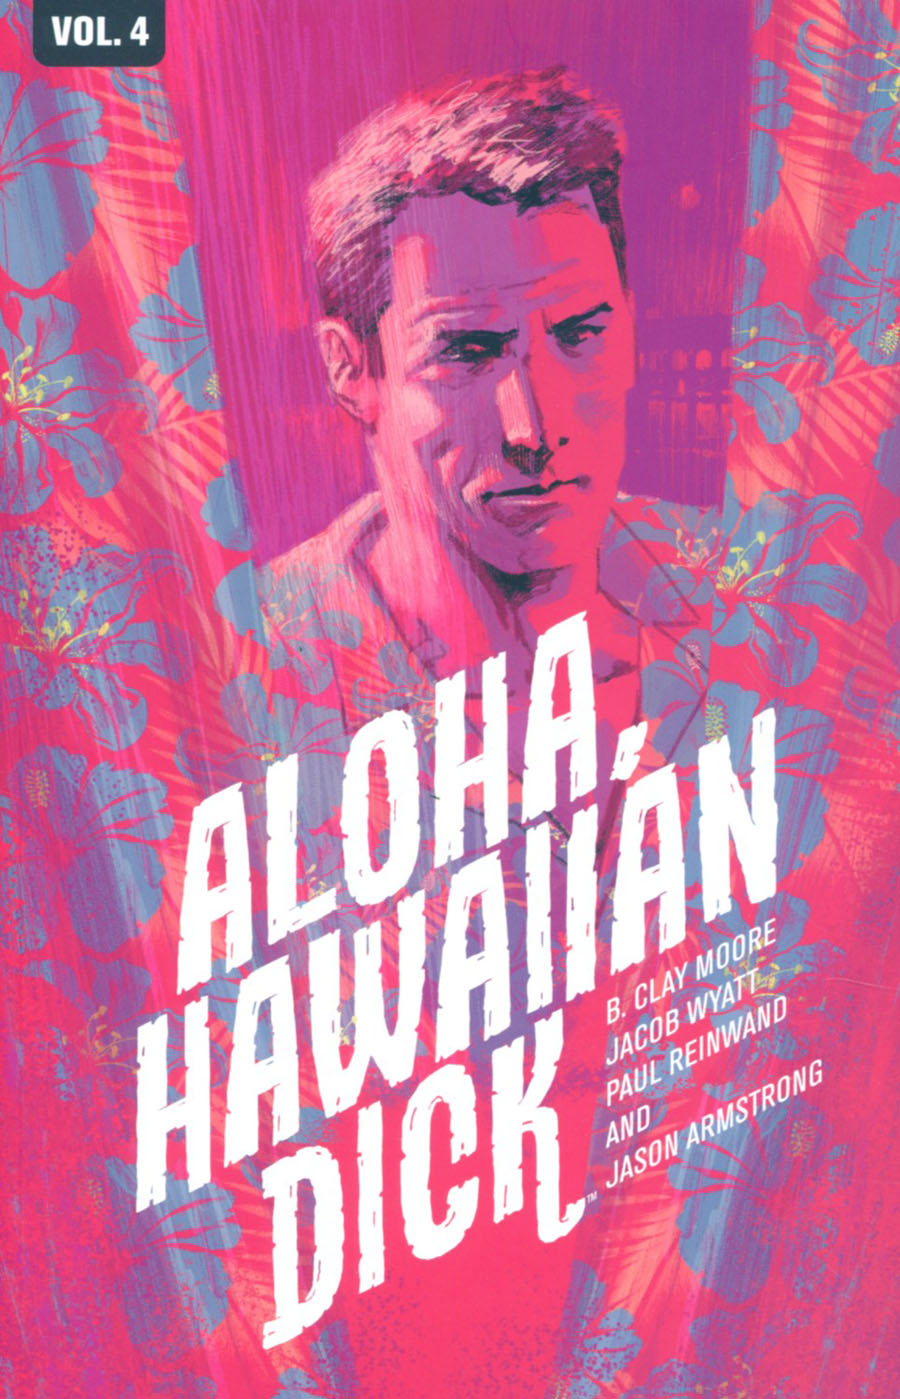 Hawaiian Dick Vol 4 Aloha Hawaiian Dick TP